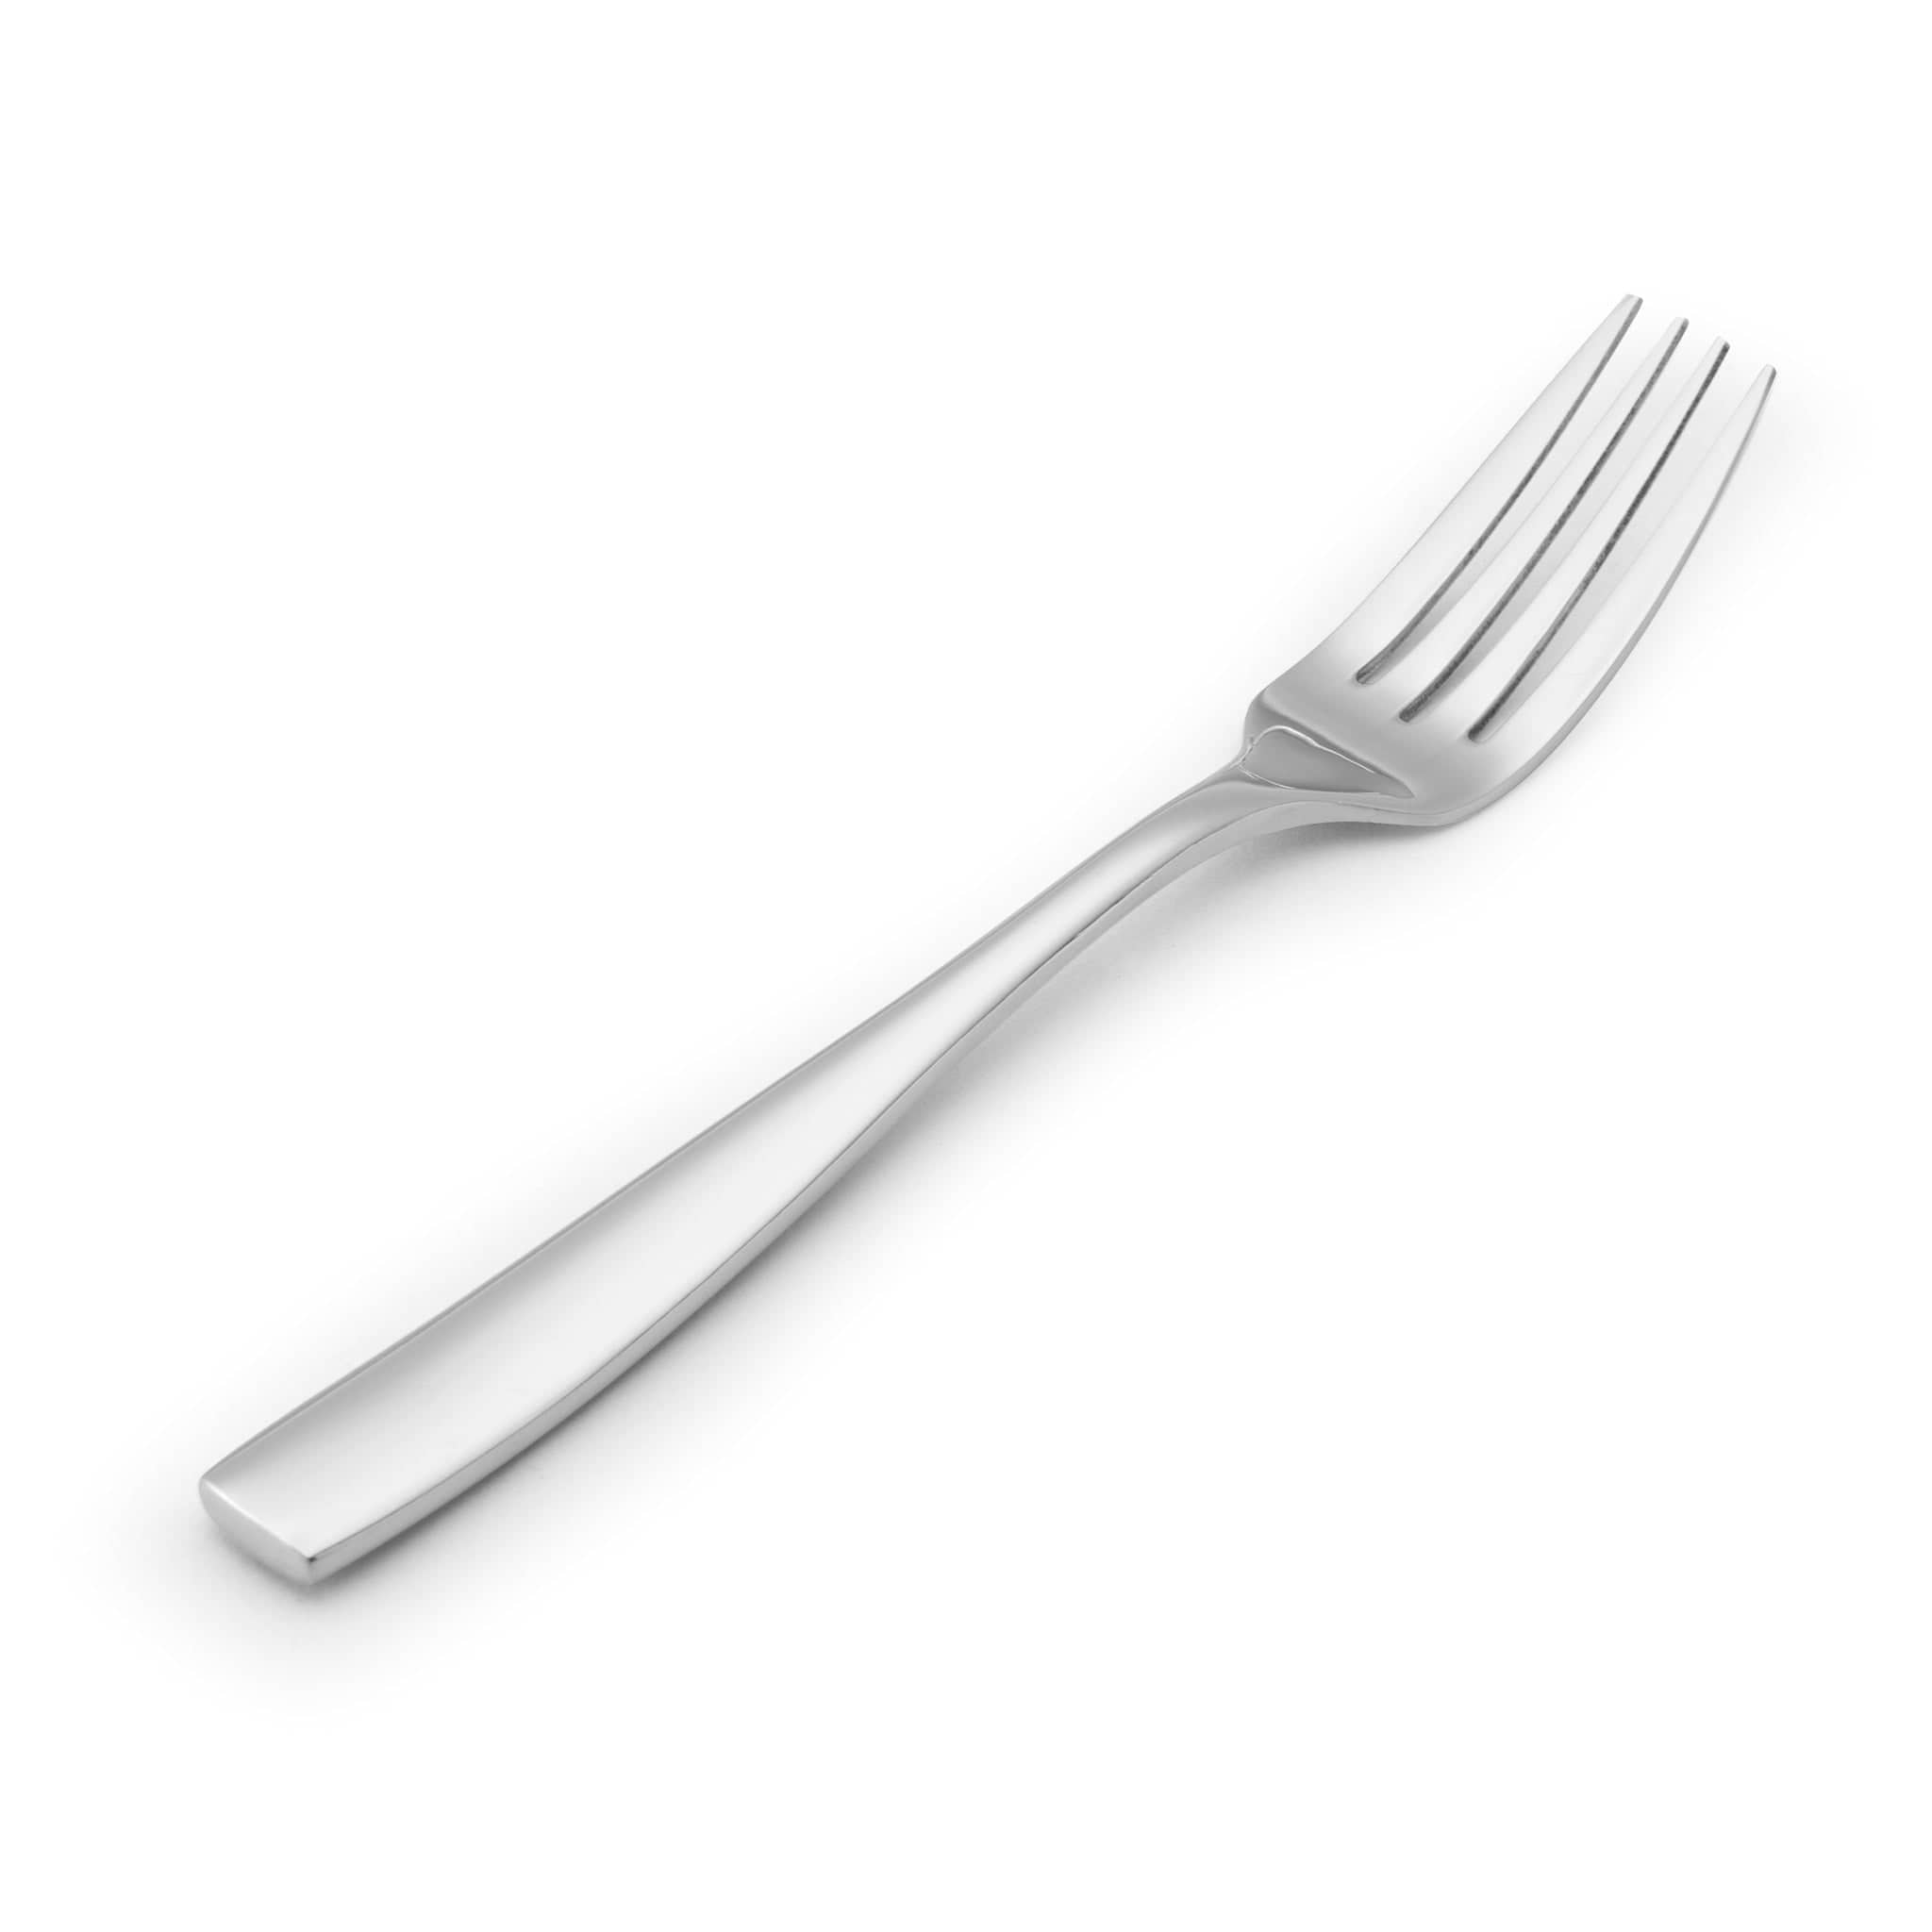 Delano 18/10 Table Fork 7.9" Stainless Steel